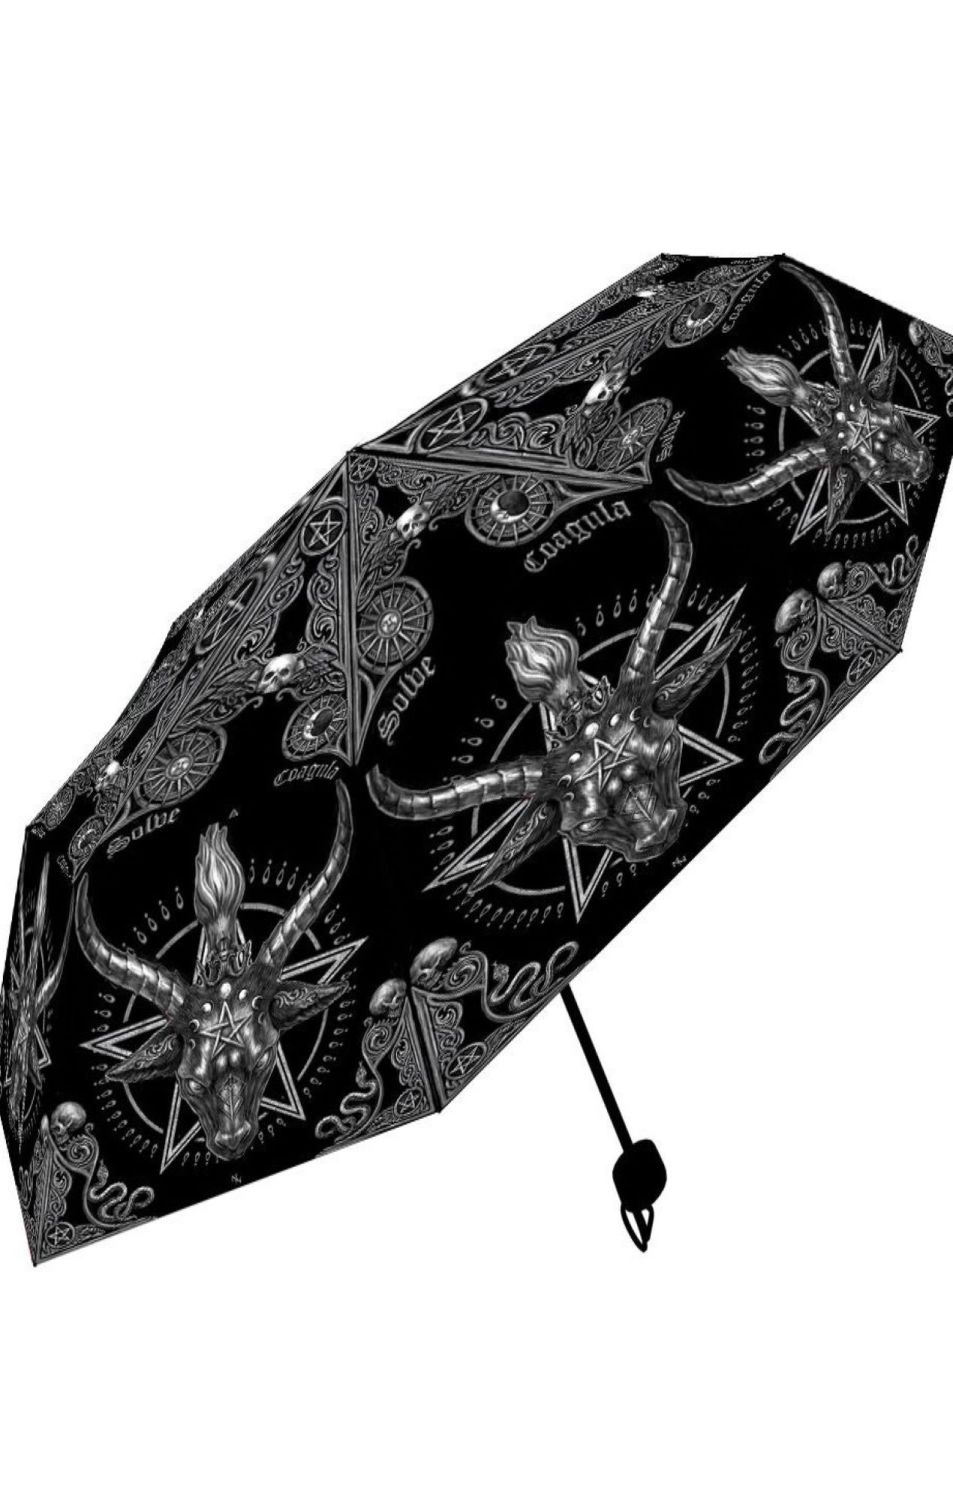 Baphomet Umbrella RRP £19.99